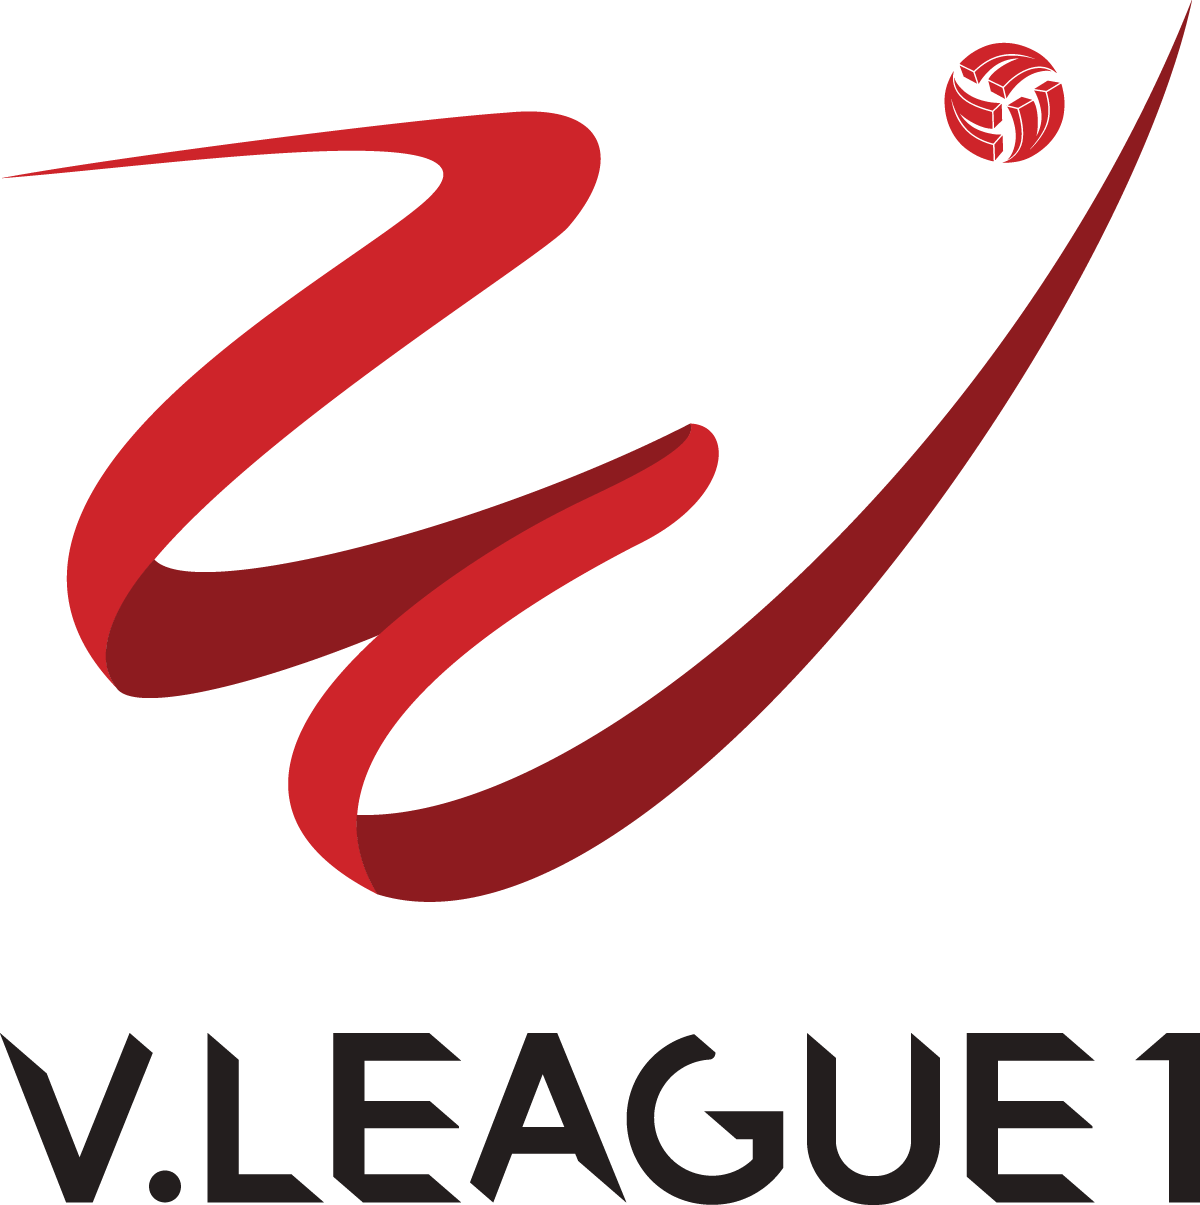 logo v league 1 original